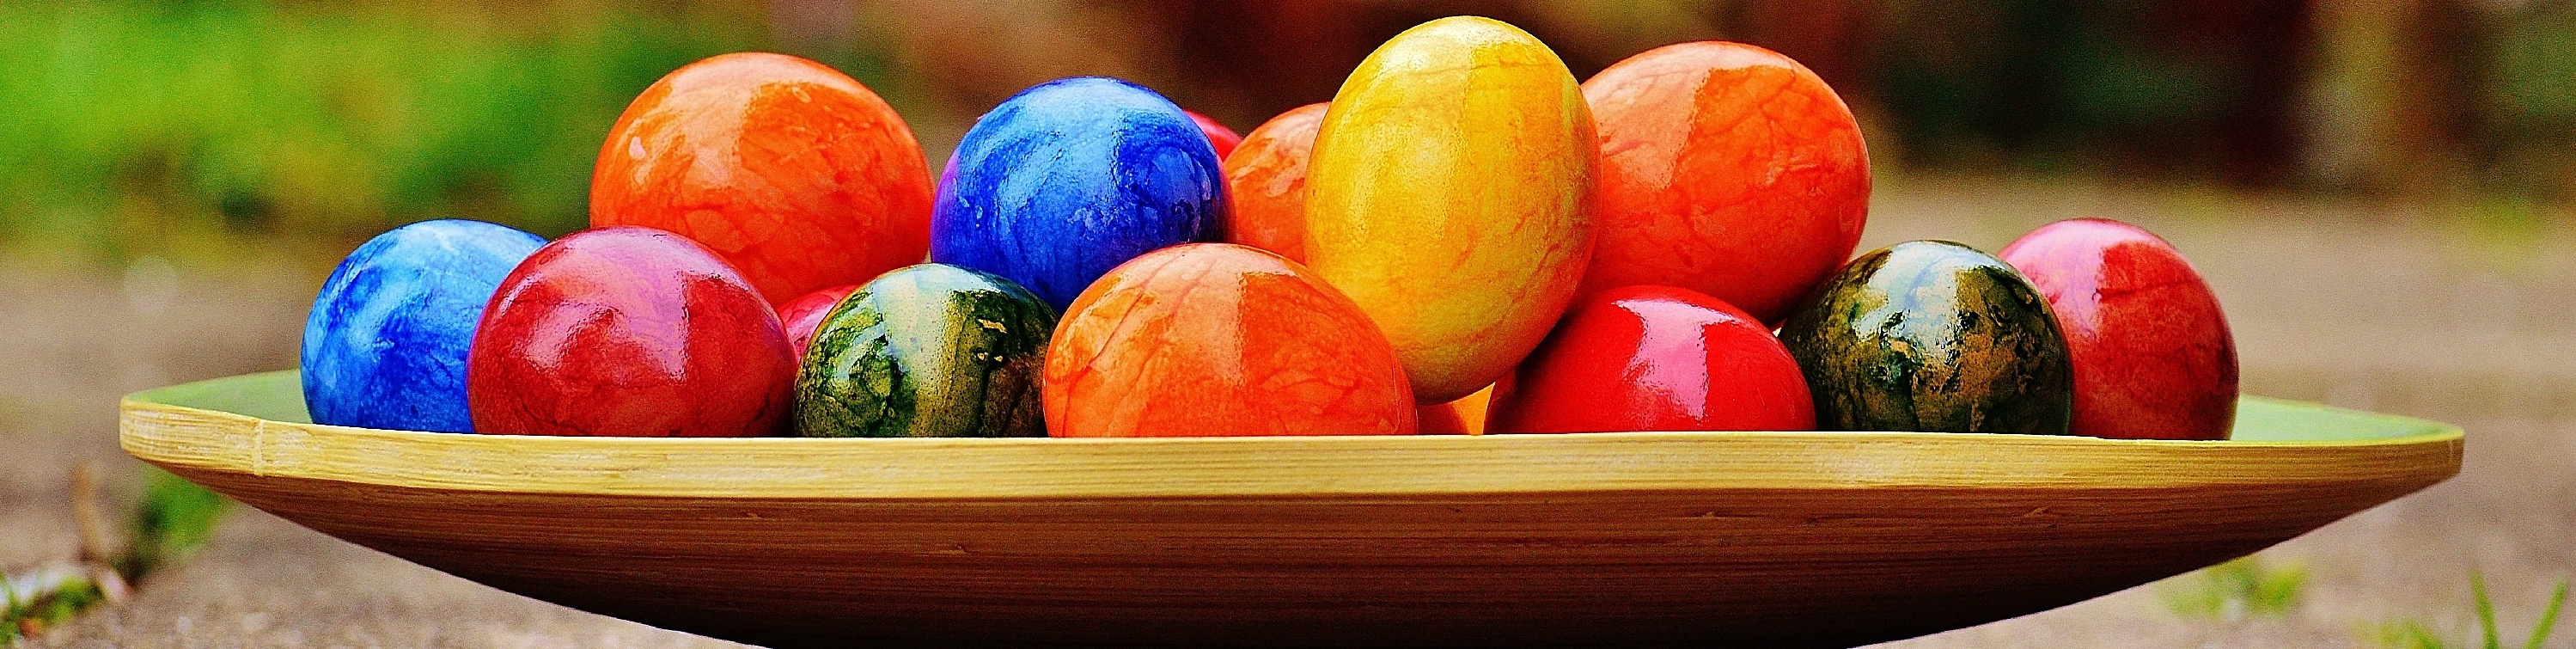 Velikonoce – svátky jara i oslava zmrtvýchvstání